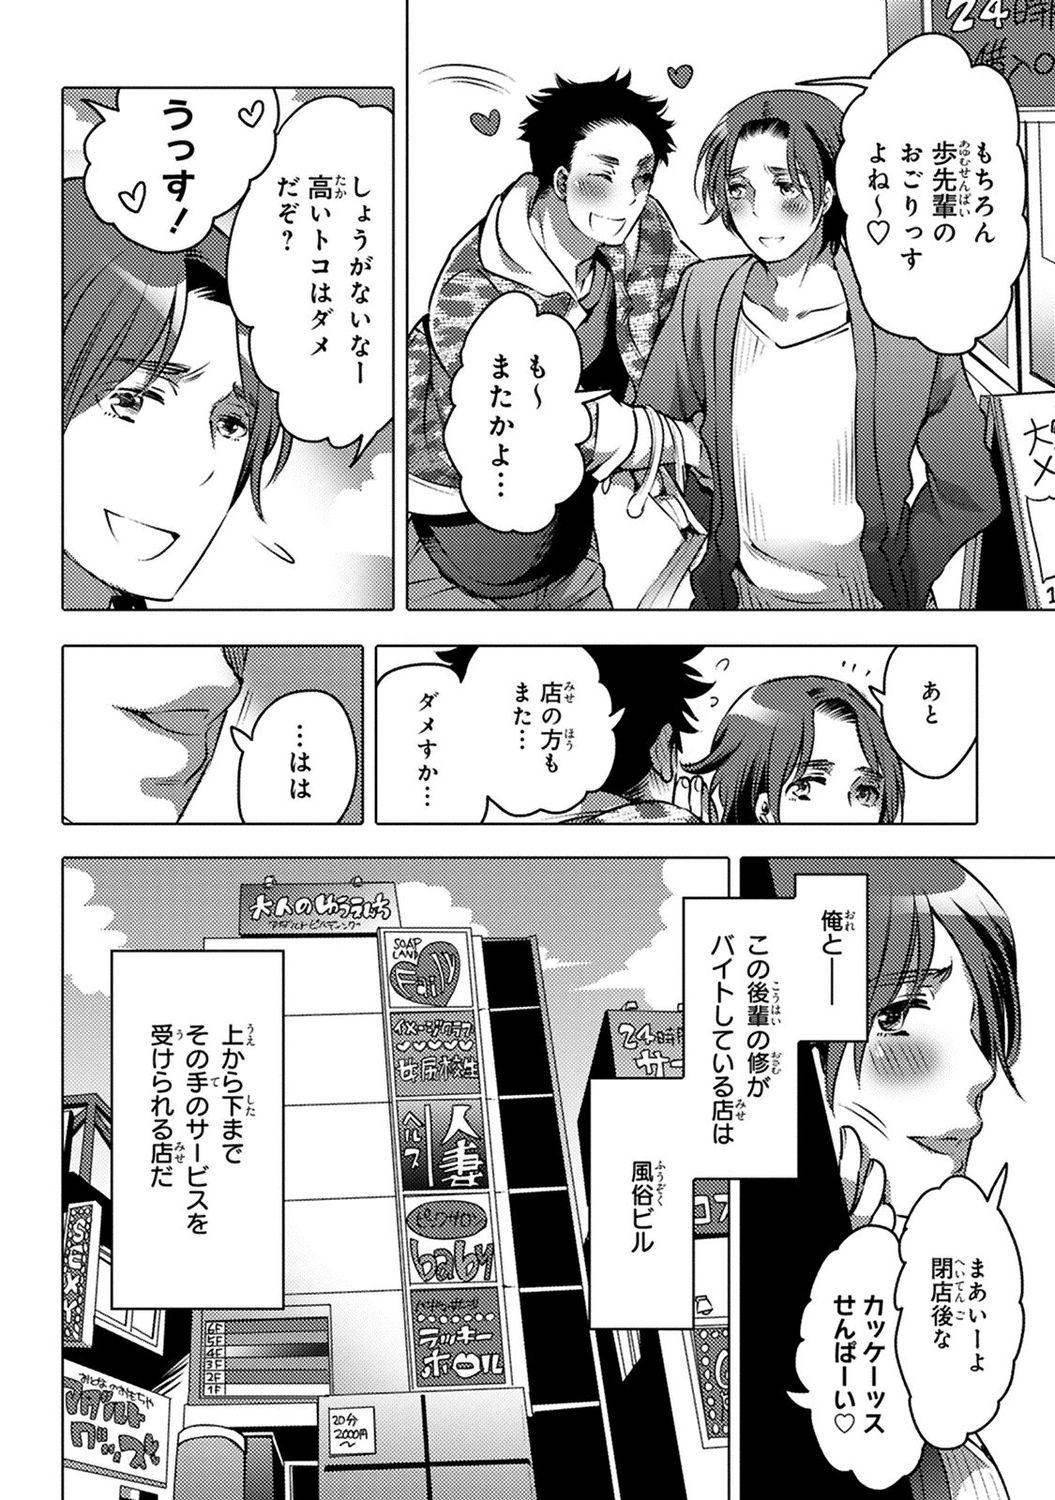 4some Aiyoku Lucky Hall Rebolando - Page 6